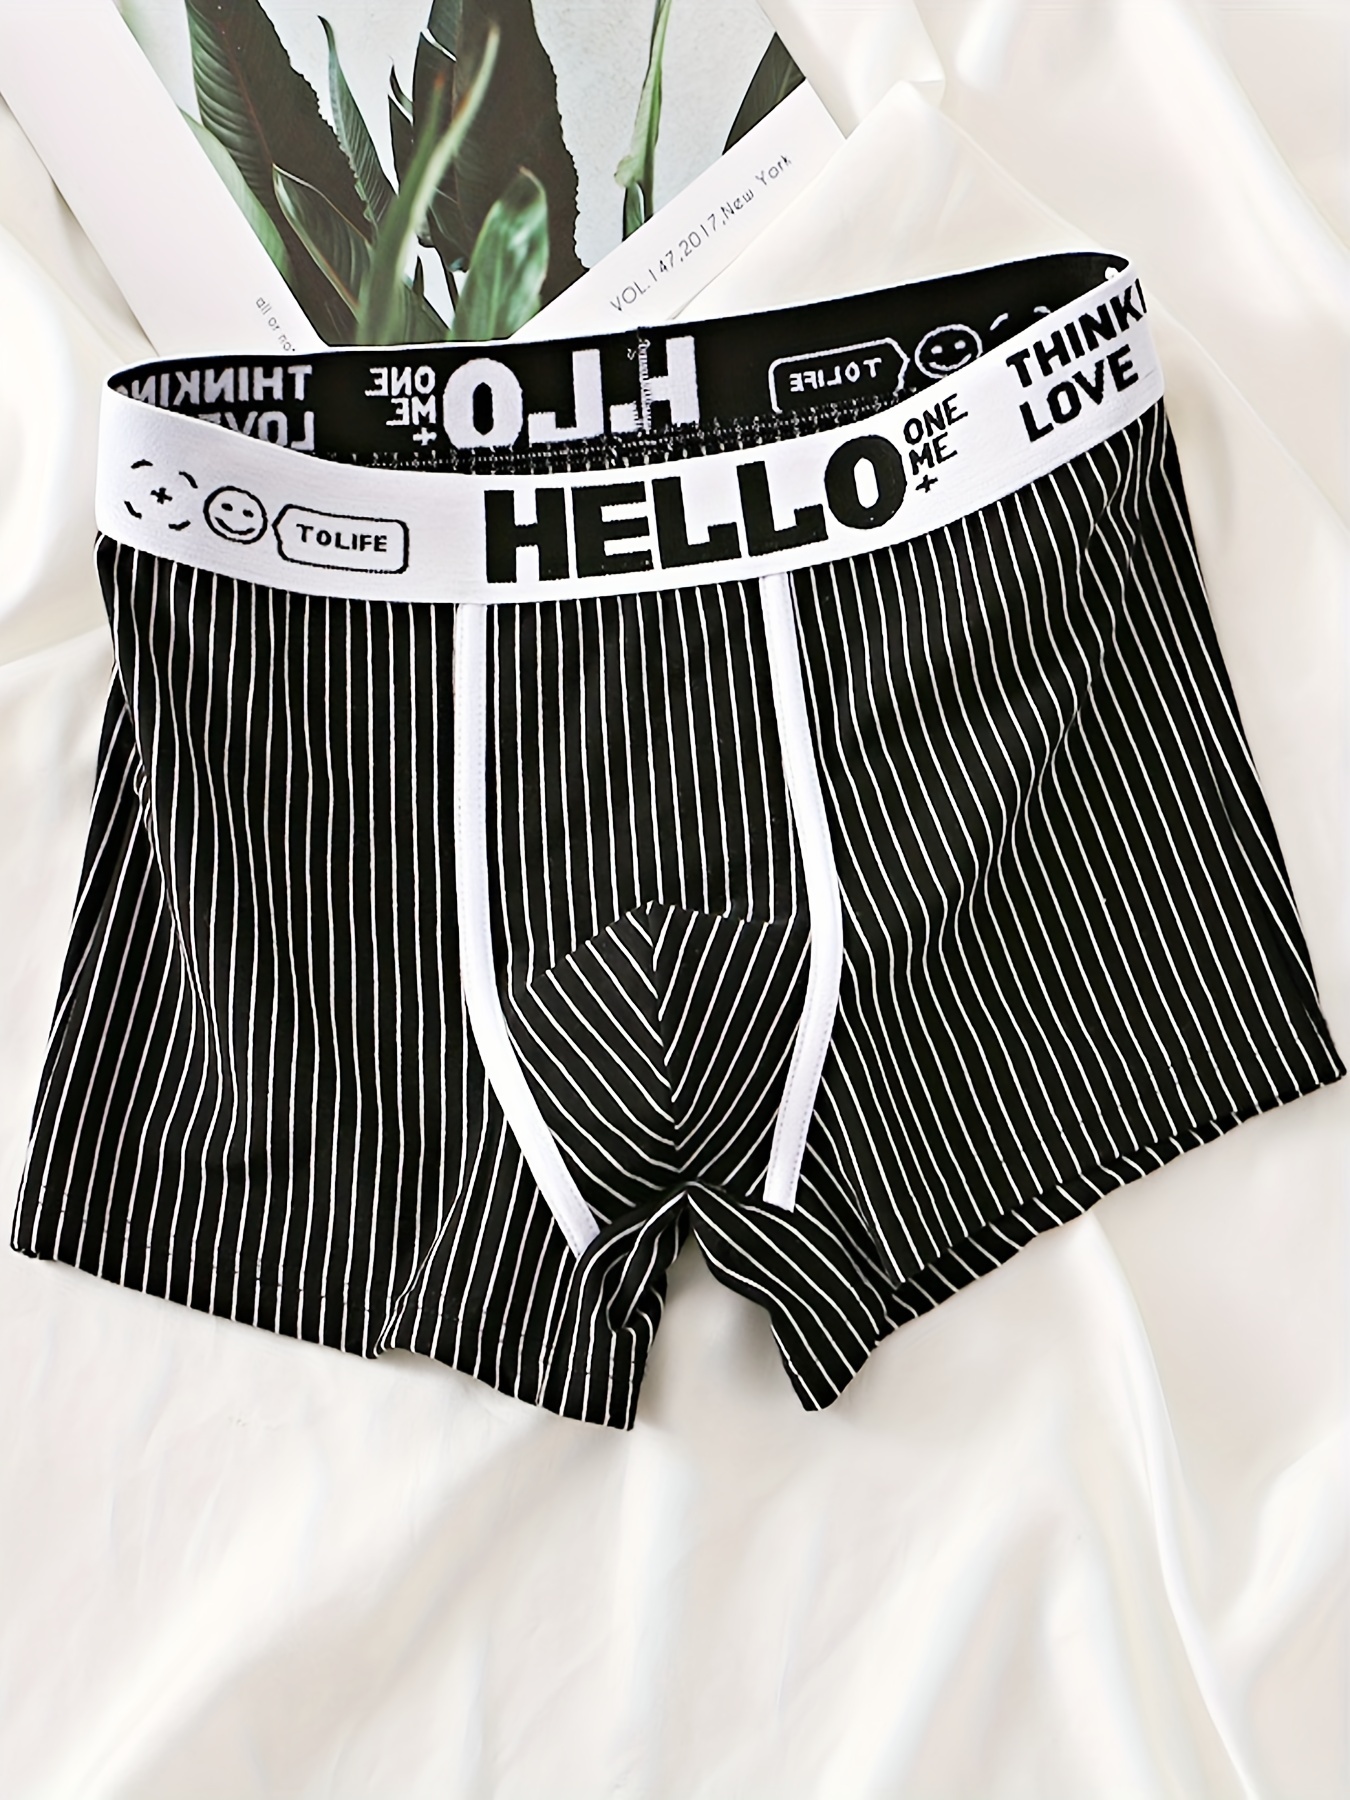 2pcs Men's 'HELLO' Print Fashion Striped Cotton Boxer Briefs, Breathable  Comfy Elastic Waistband Panties, Men's Underwear, Multicolor Set